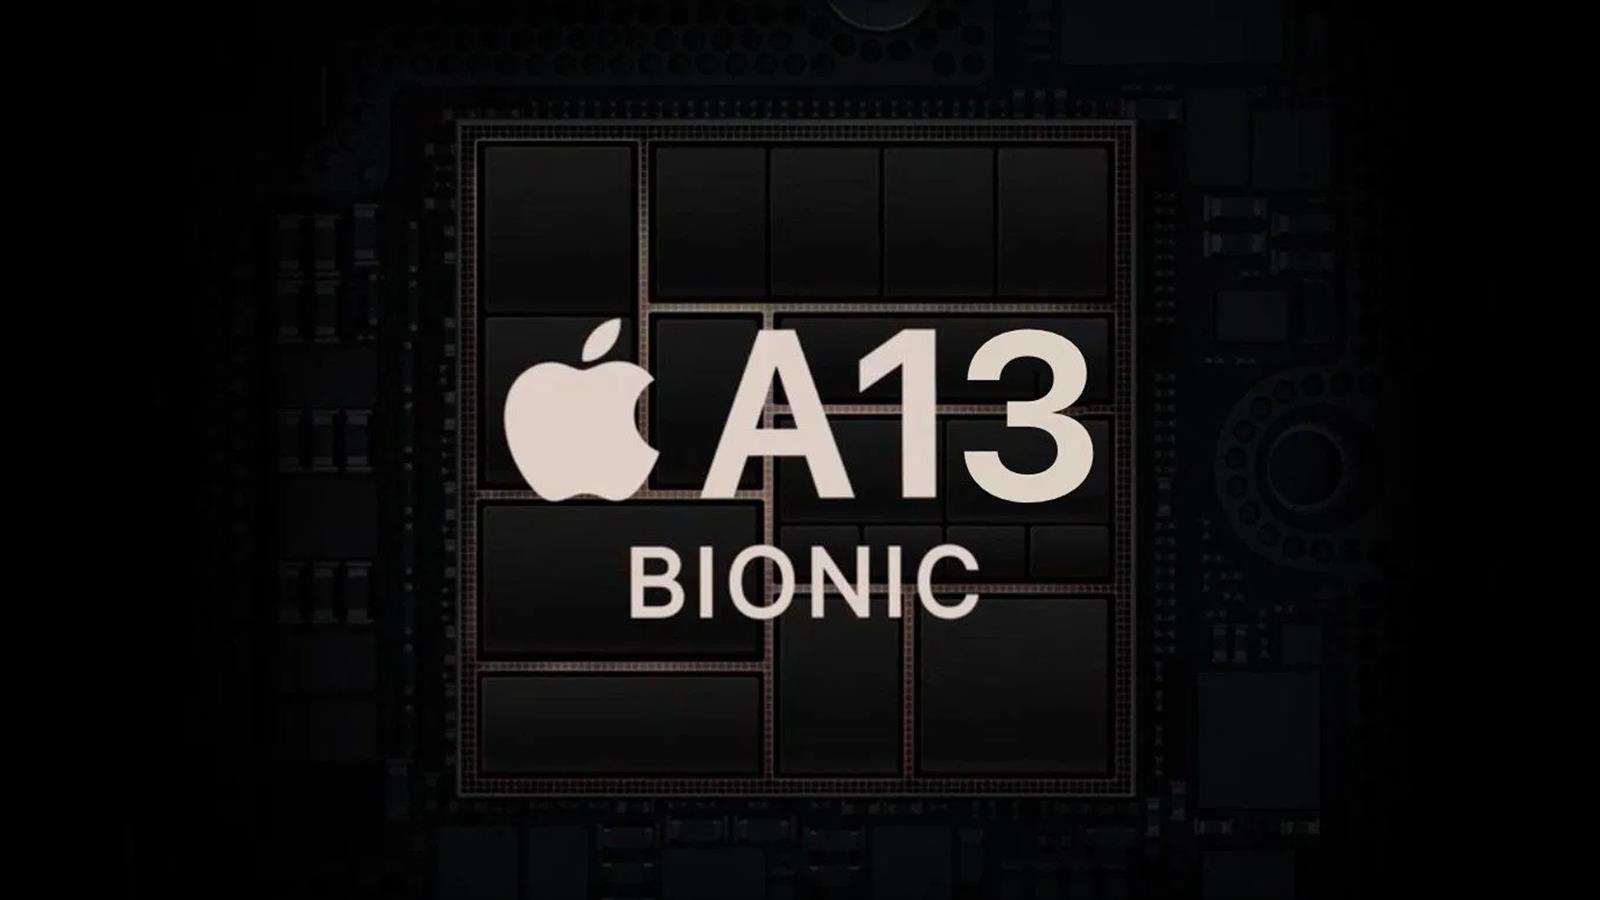 傳蘋果2021年春季推出新iPad採用 A13 Bionic處理器